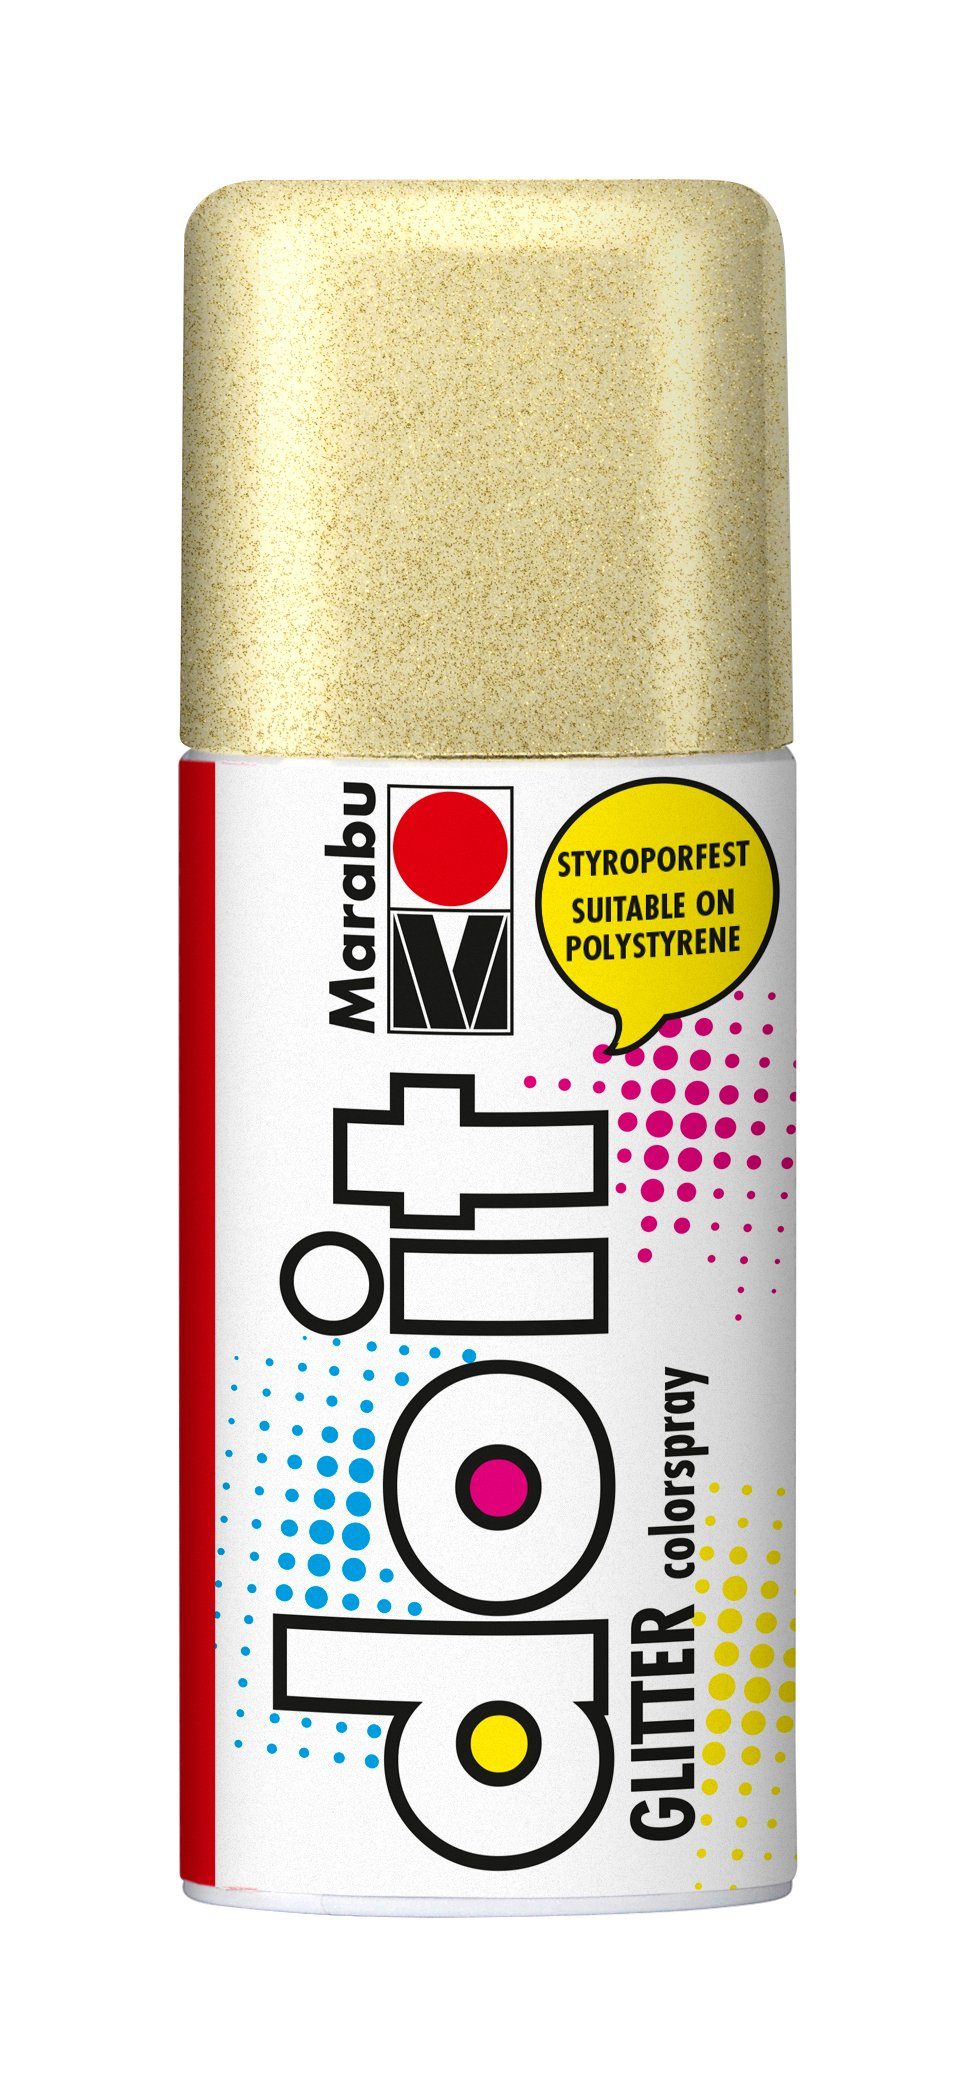 Marabu Sprühfarbe do it GLITTER, 150 ml Glitter-Gold